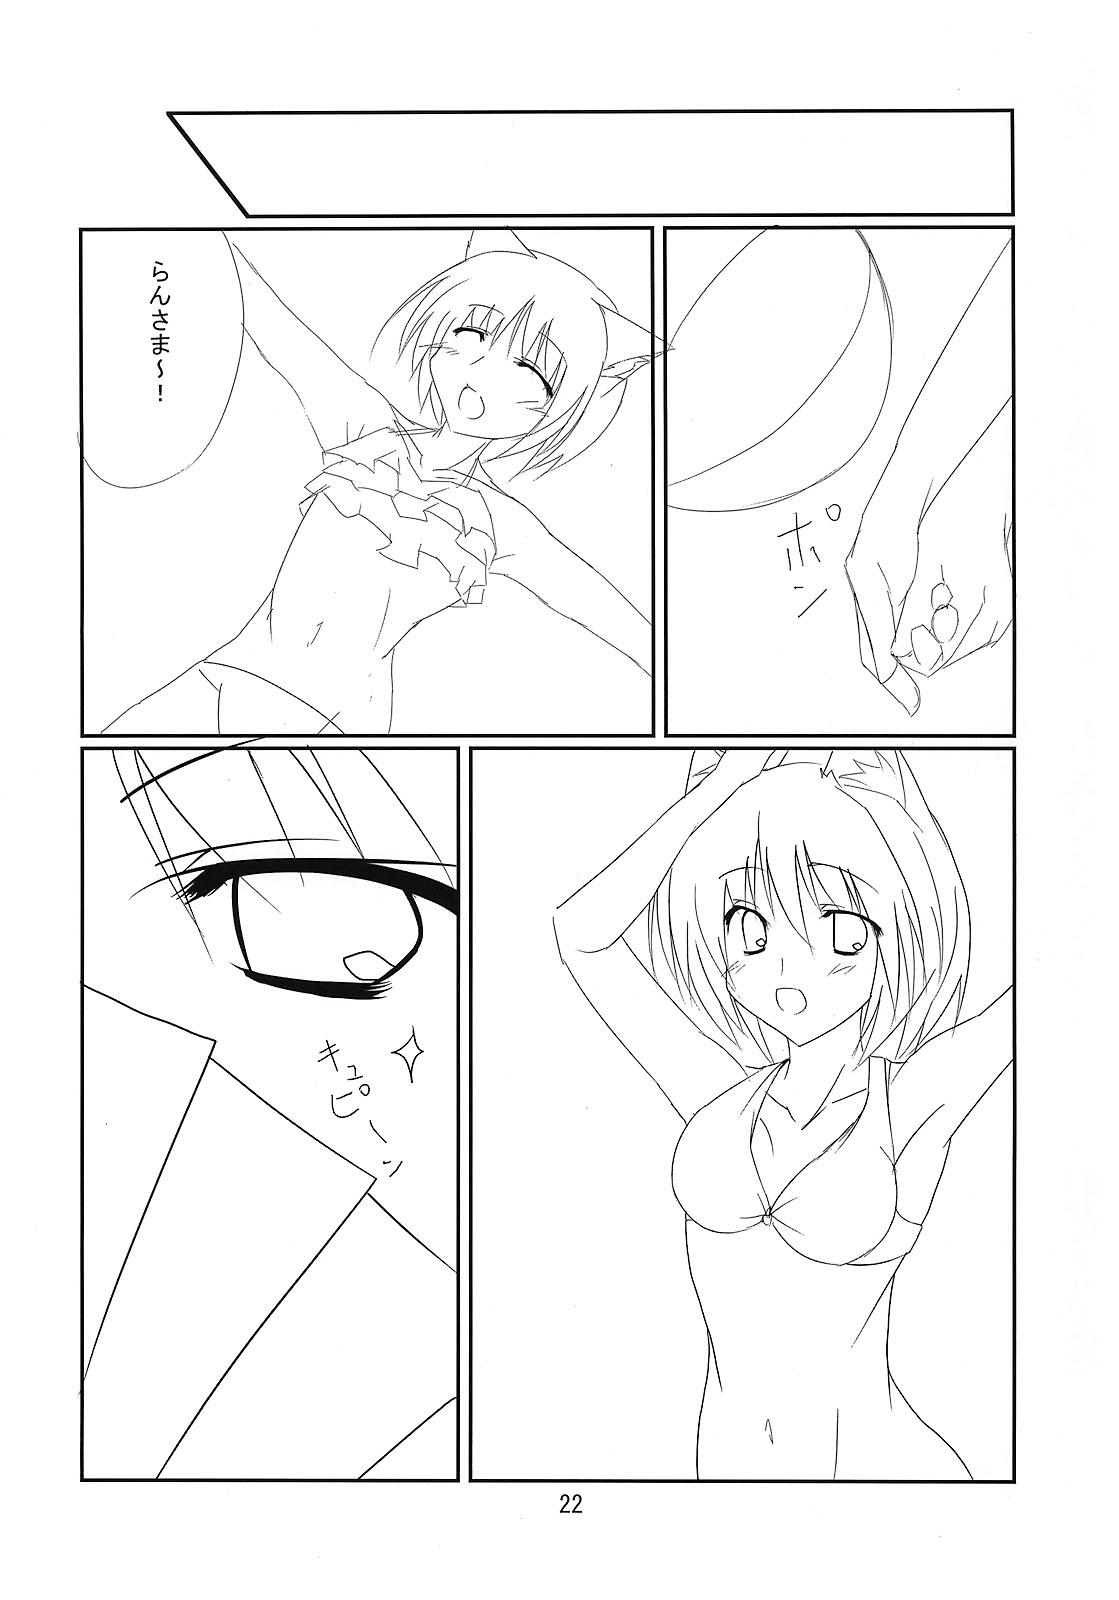 RAN × Yukari AND Alice × Marisa 20